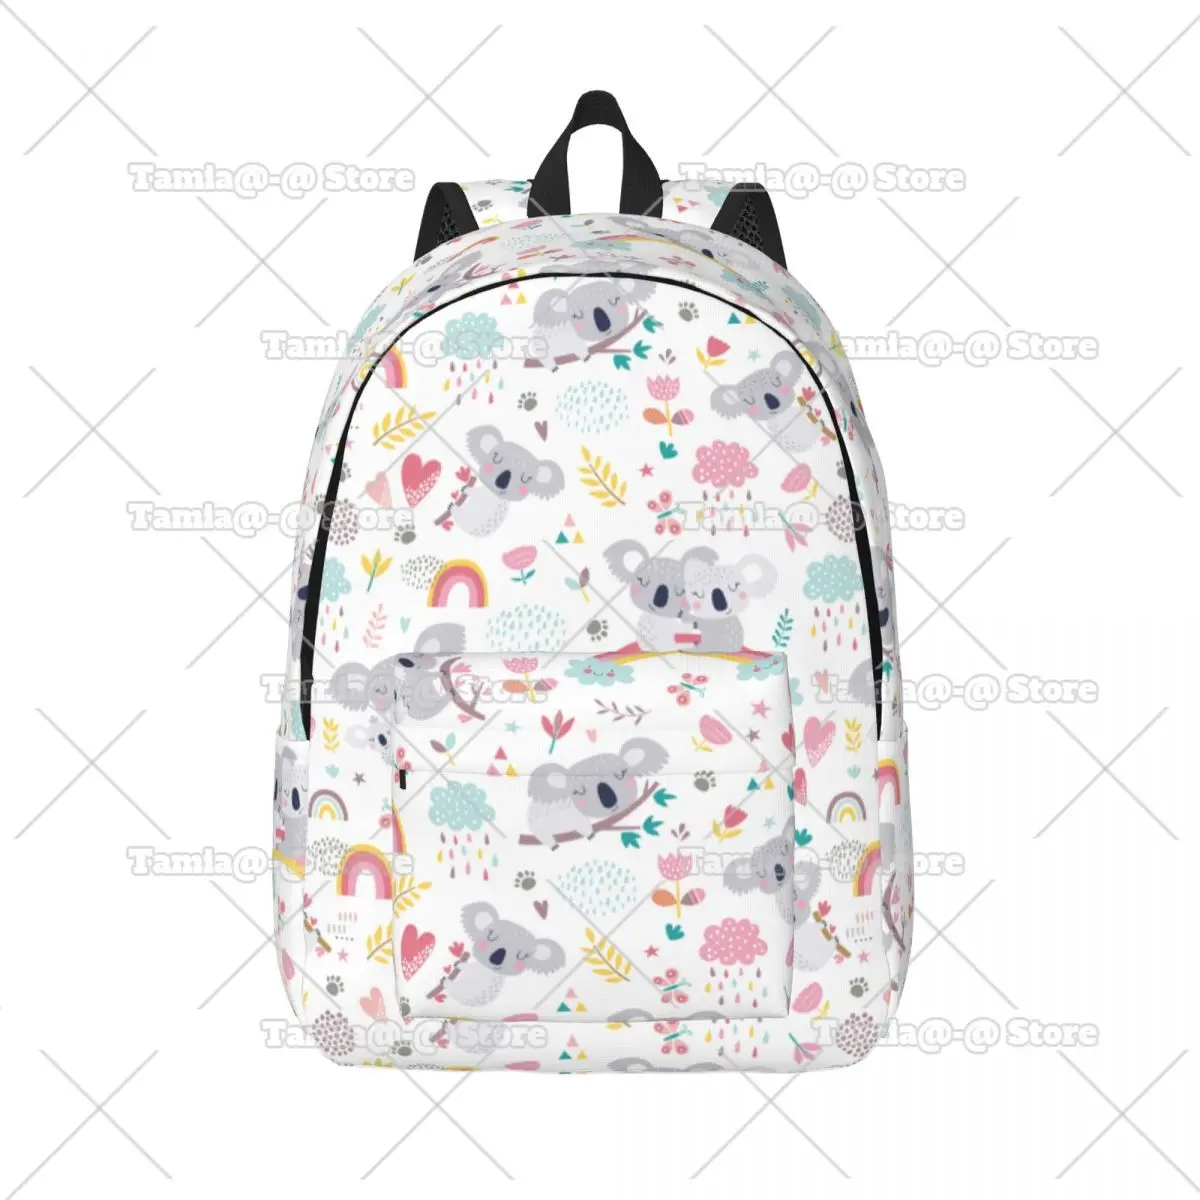 

Lovely Koala Bear Cartoon Bagpack for Girl Kid Student Schoolbag Bookbag Daypack Birthday Gifts for Children Daughter